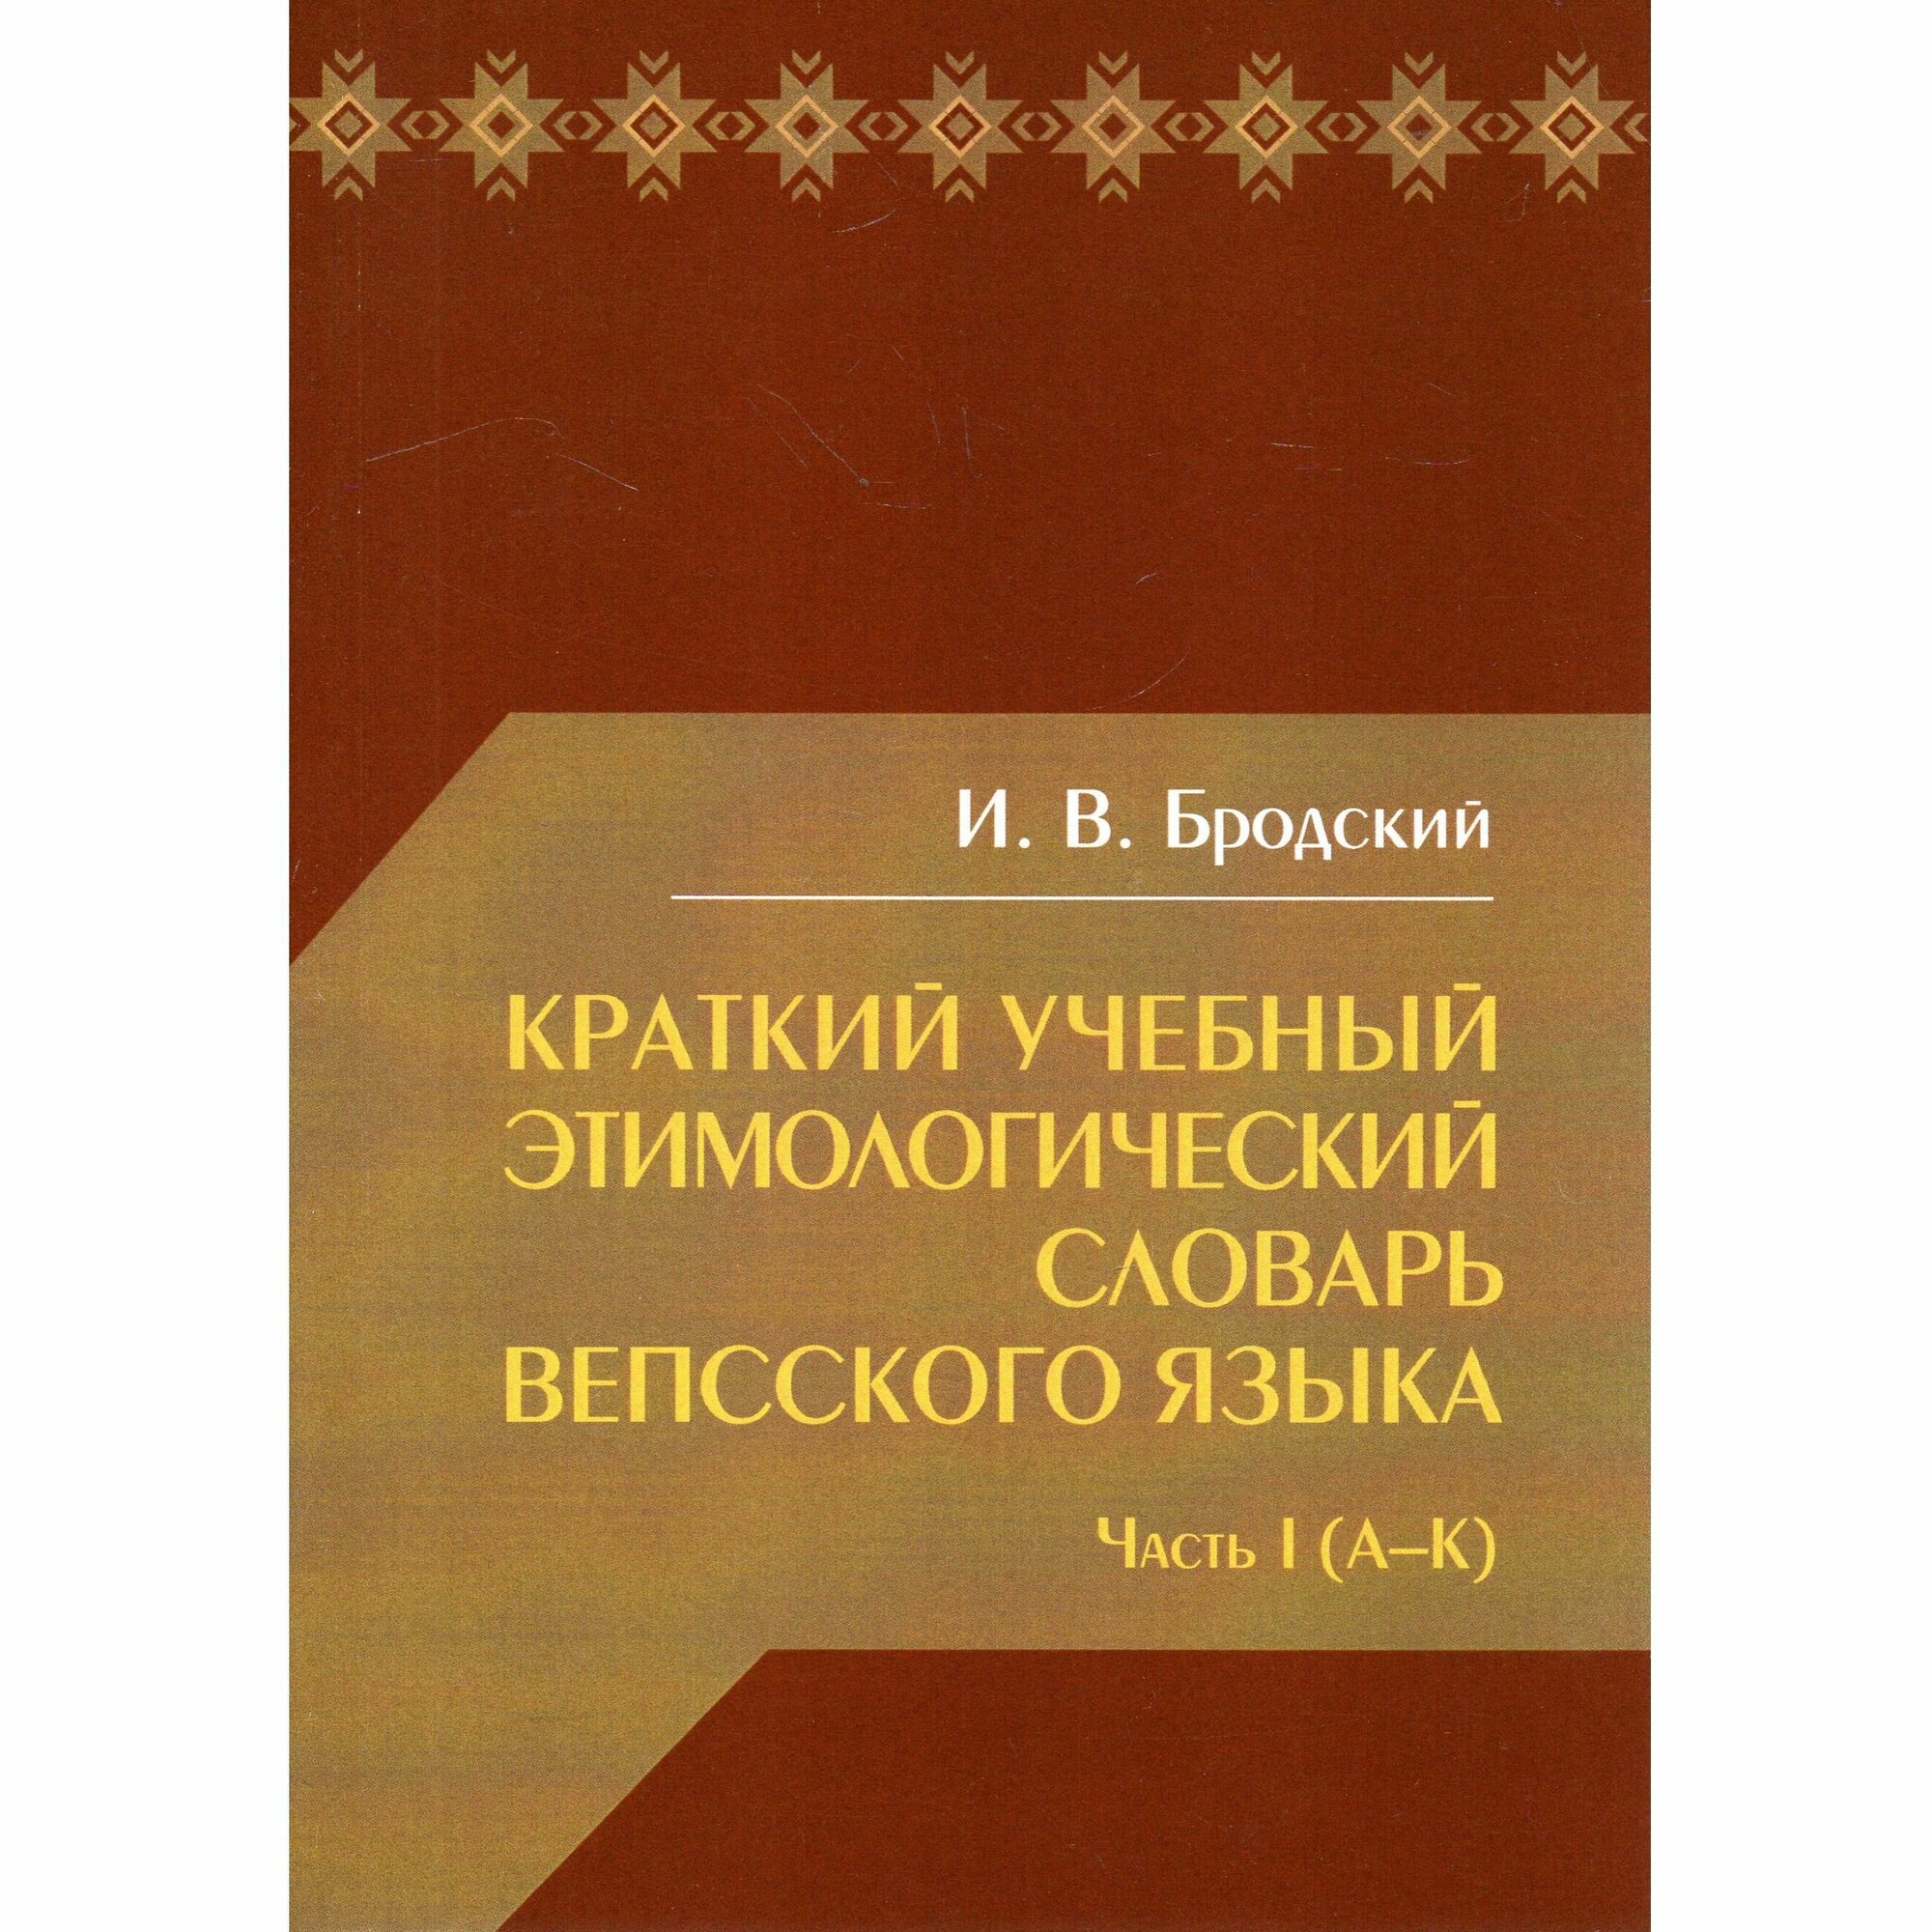 Краткий учебный этимологический словарь вепсского языка. Часть I (А-К)